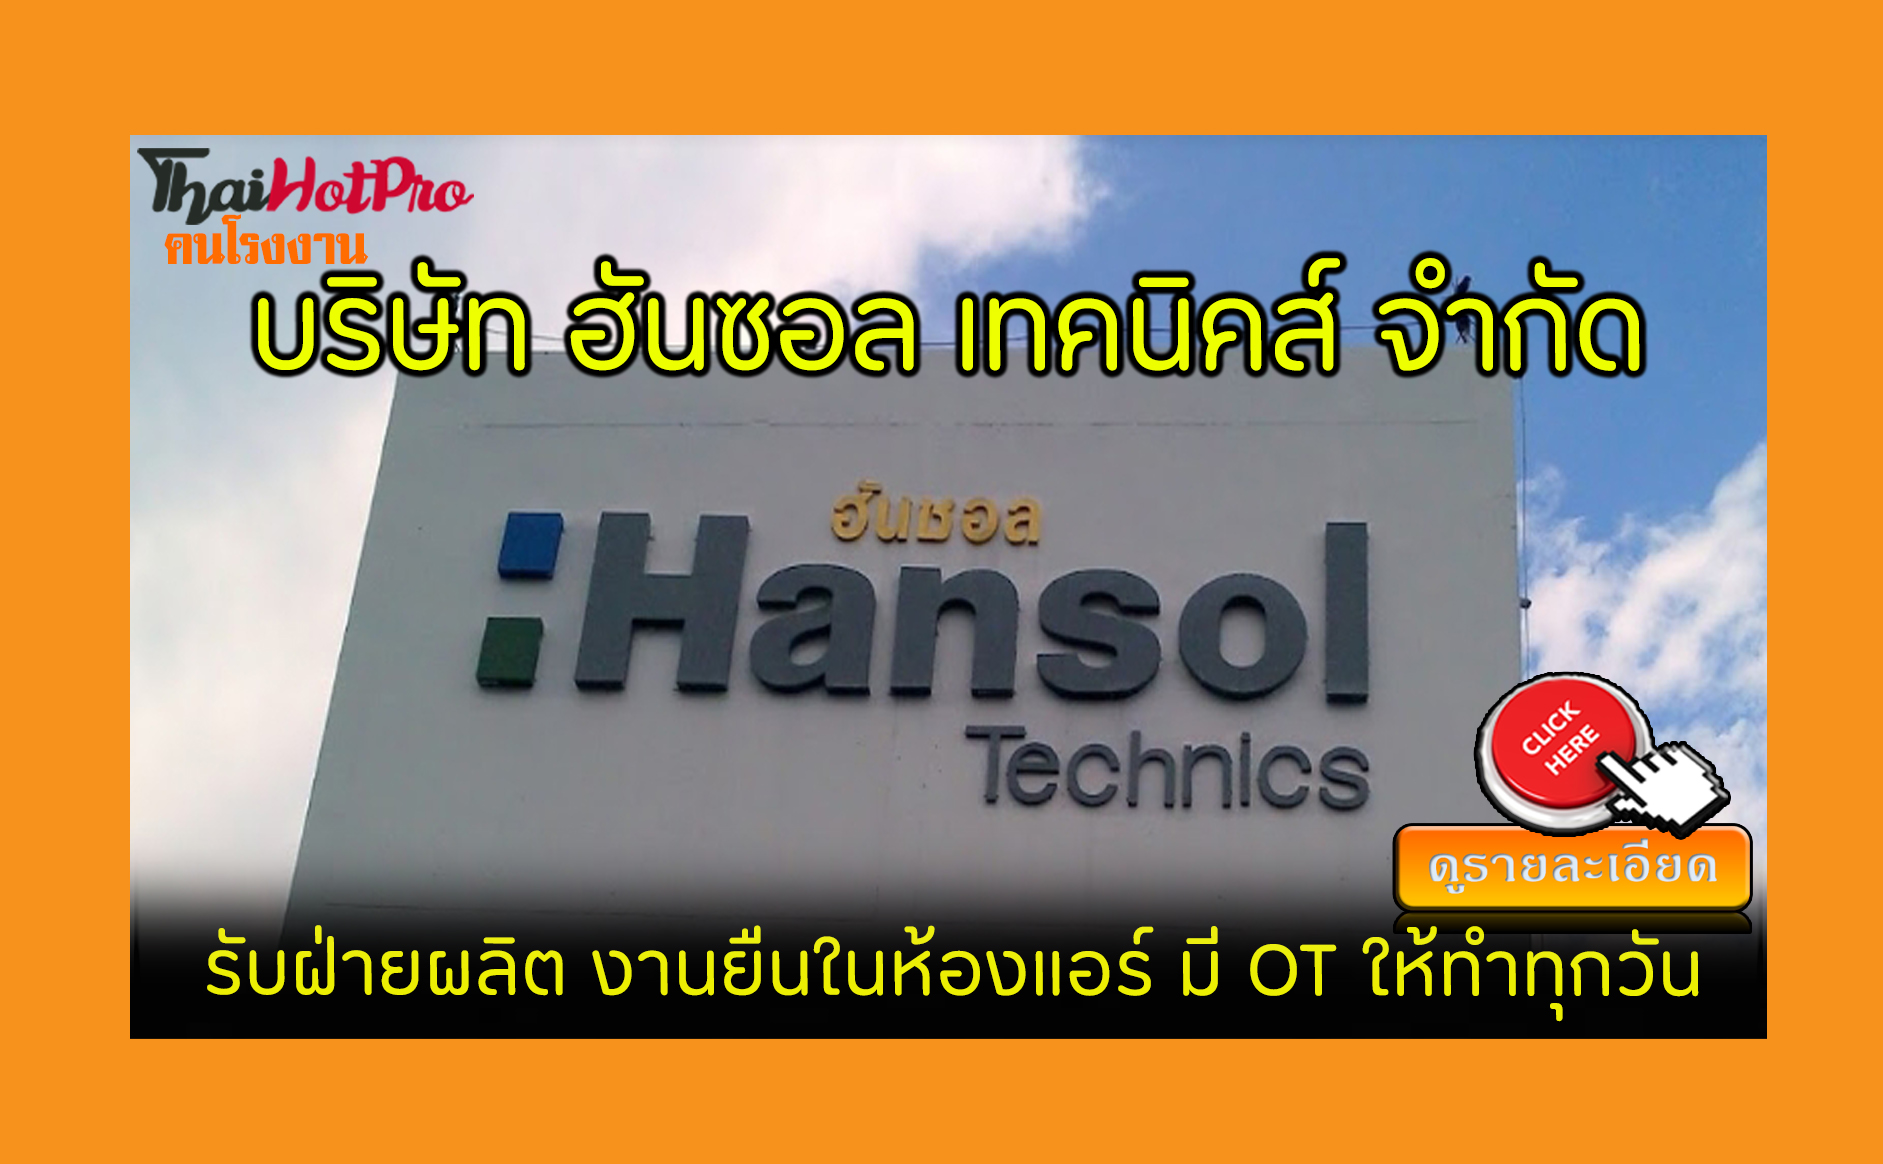 หางาน บริษัท ฮันซอล เทคนิคส์ (ประเทศไทย) จำกั